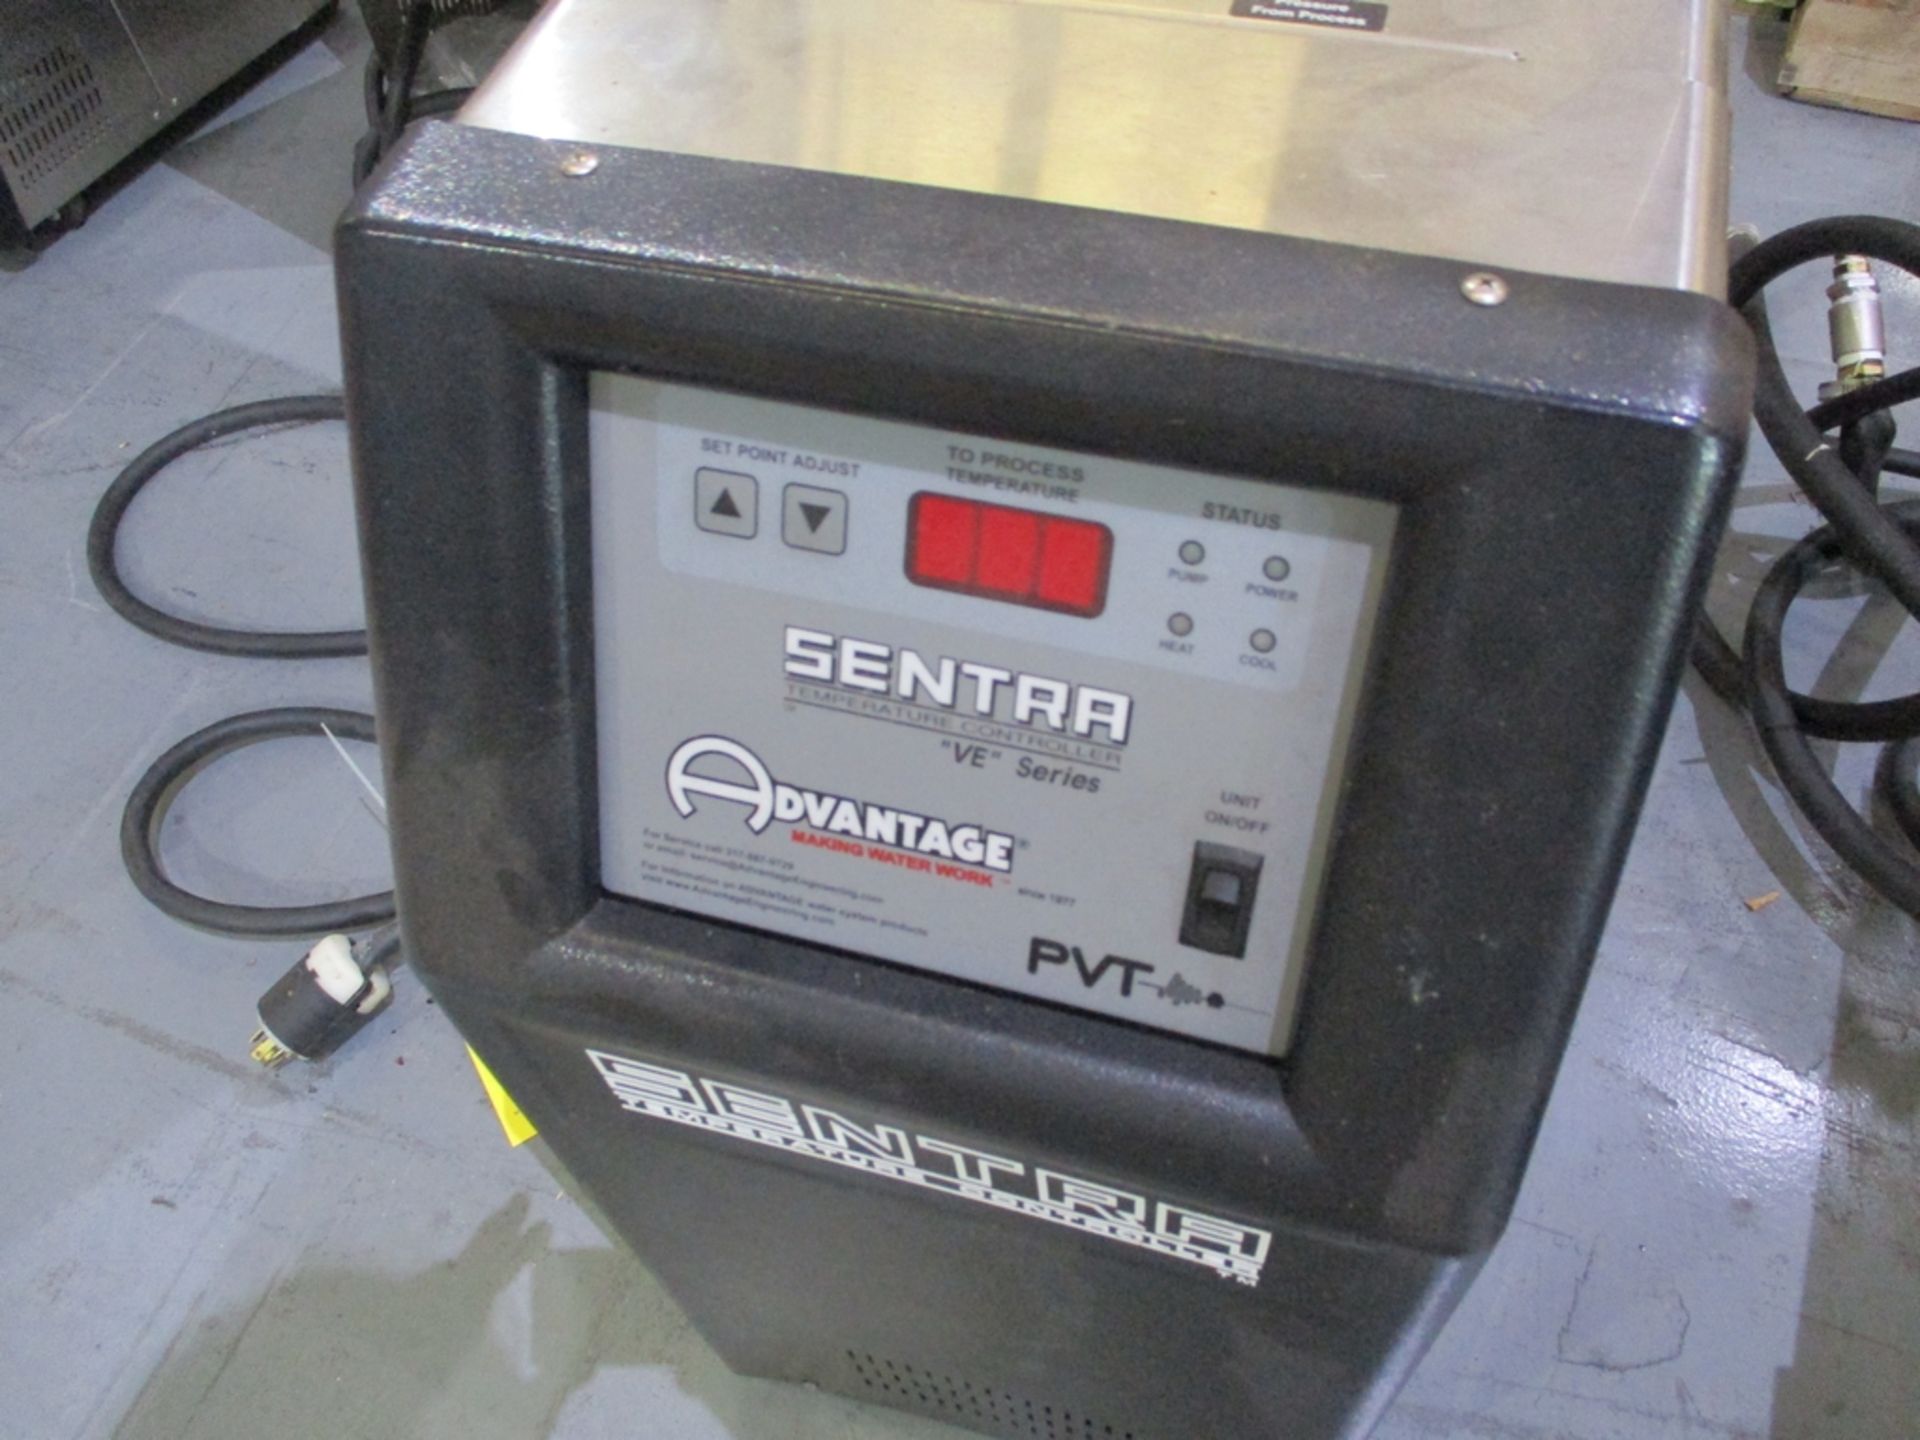 2015 Sentra Advantage PVT Temperature Control Unit - Model: SK-1035VEP-21C1; 230V - Image 3 of 5